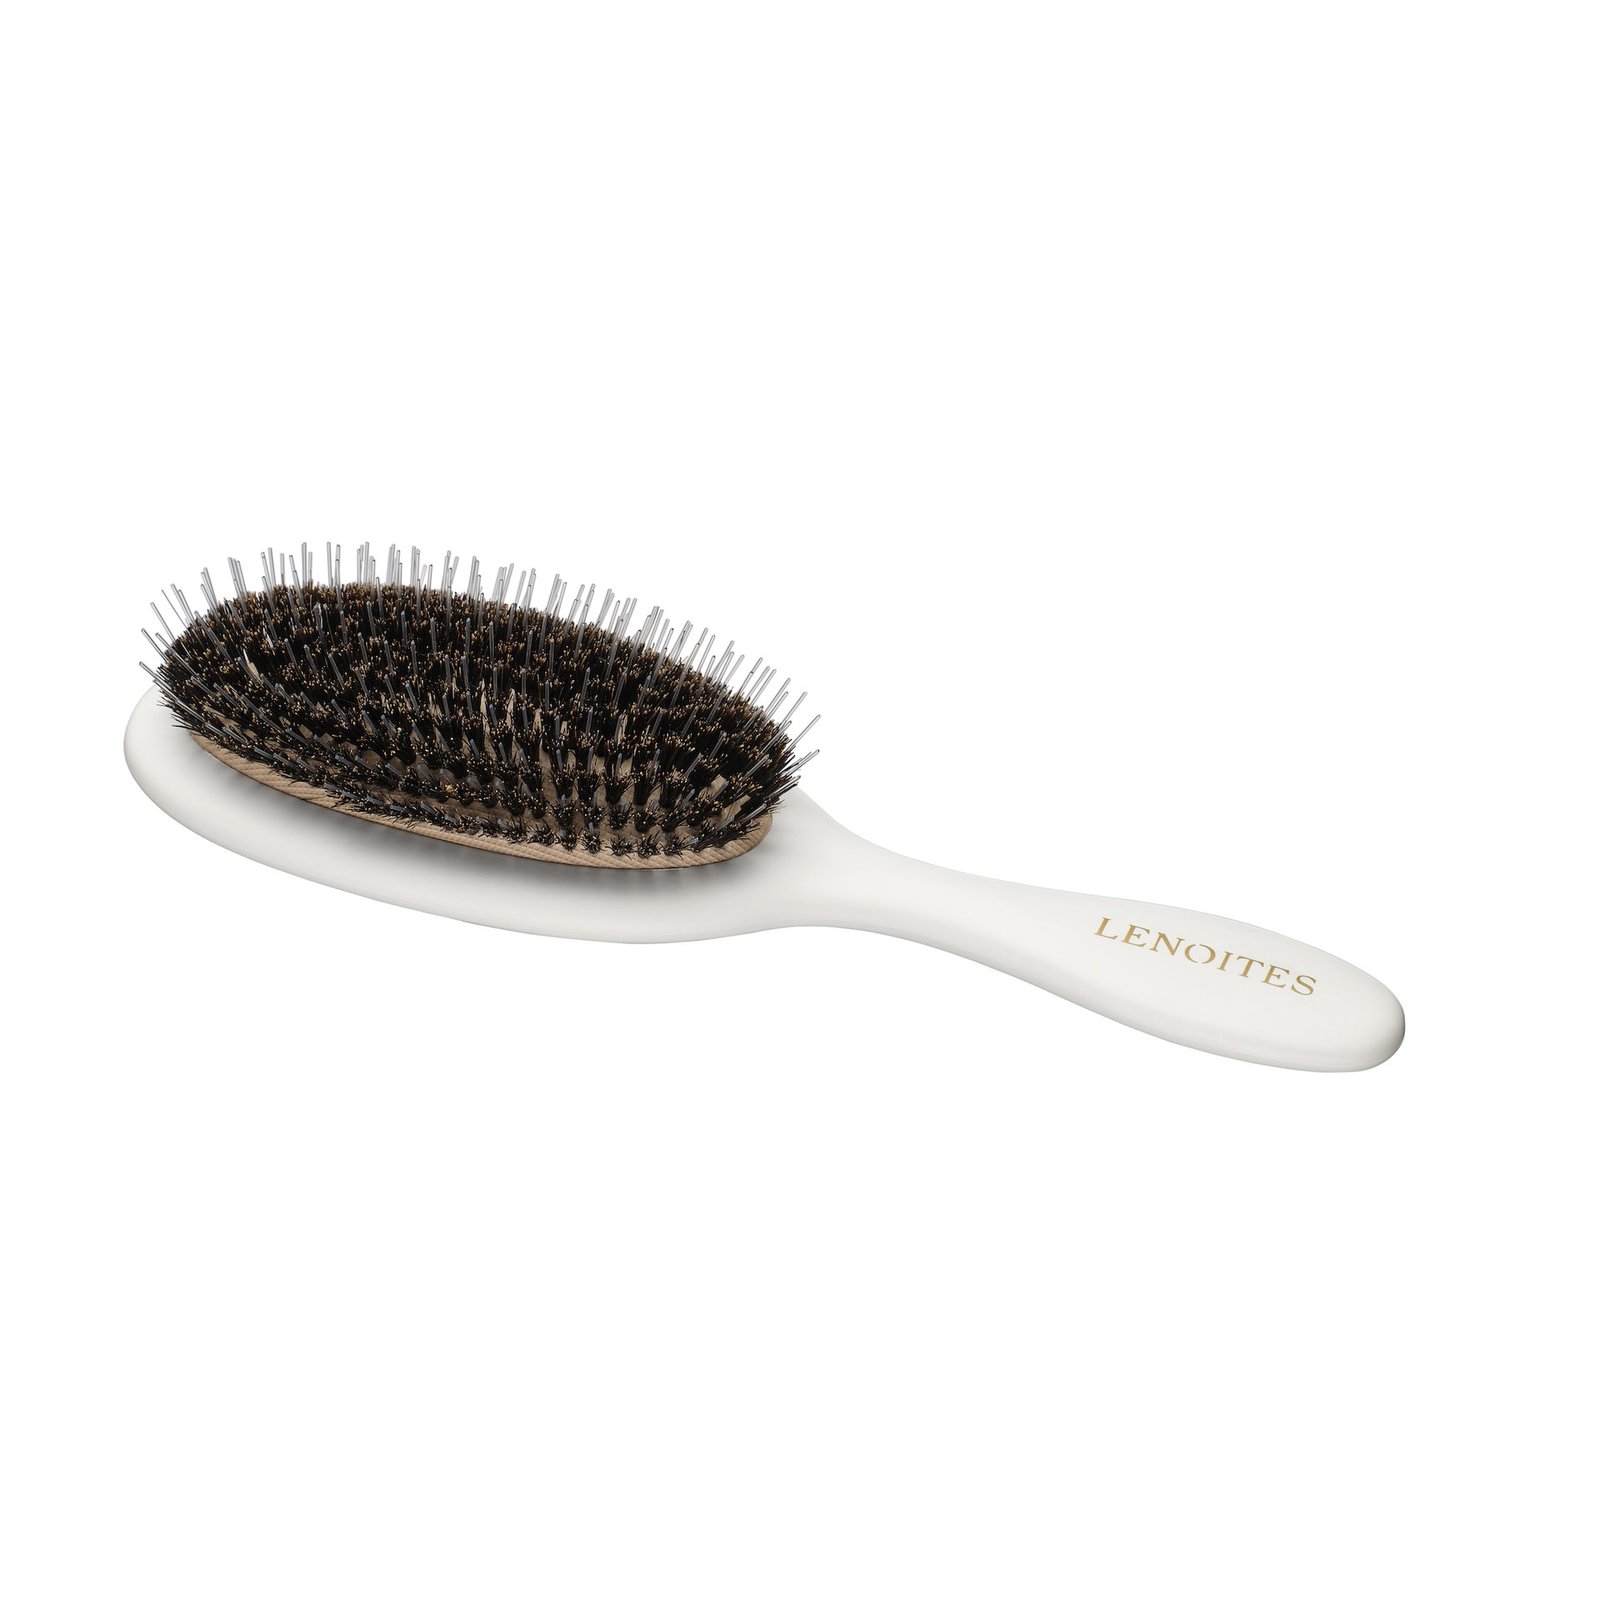 LENOITES Hair Brush Wild Boar + Pouch & Cleaner Tool White 1st